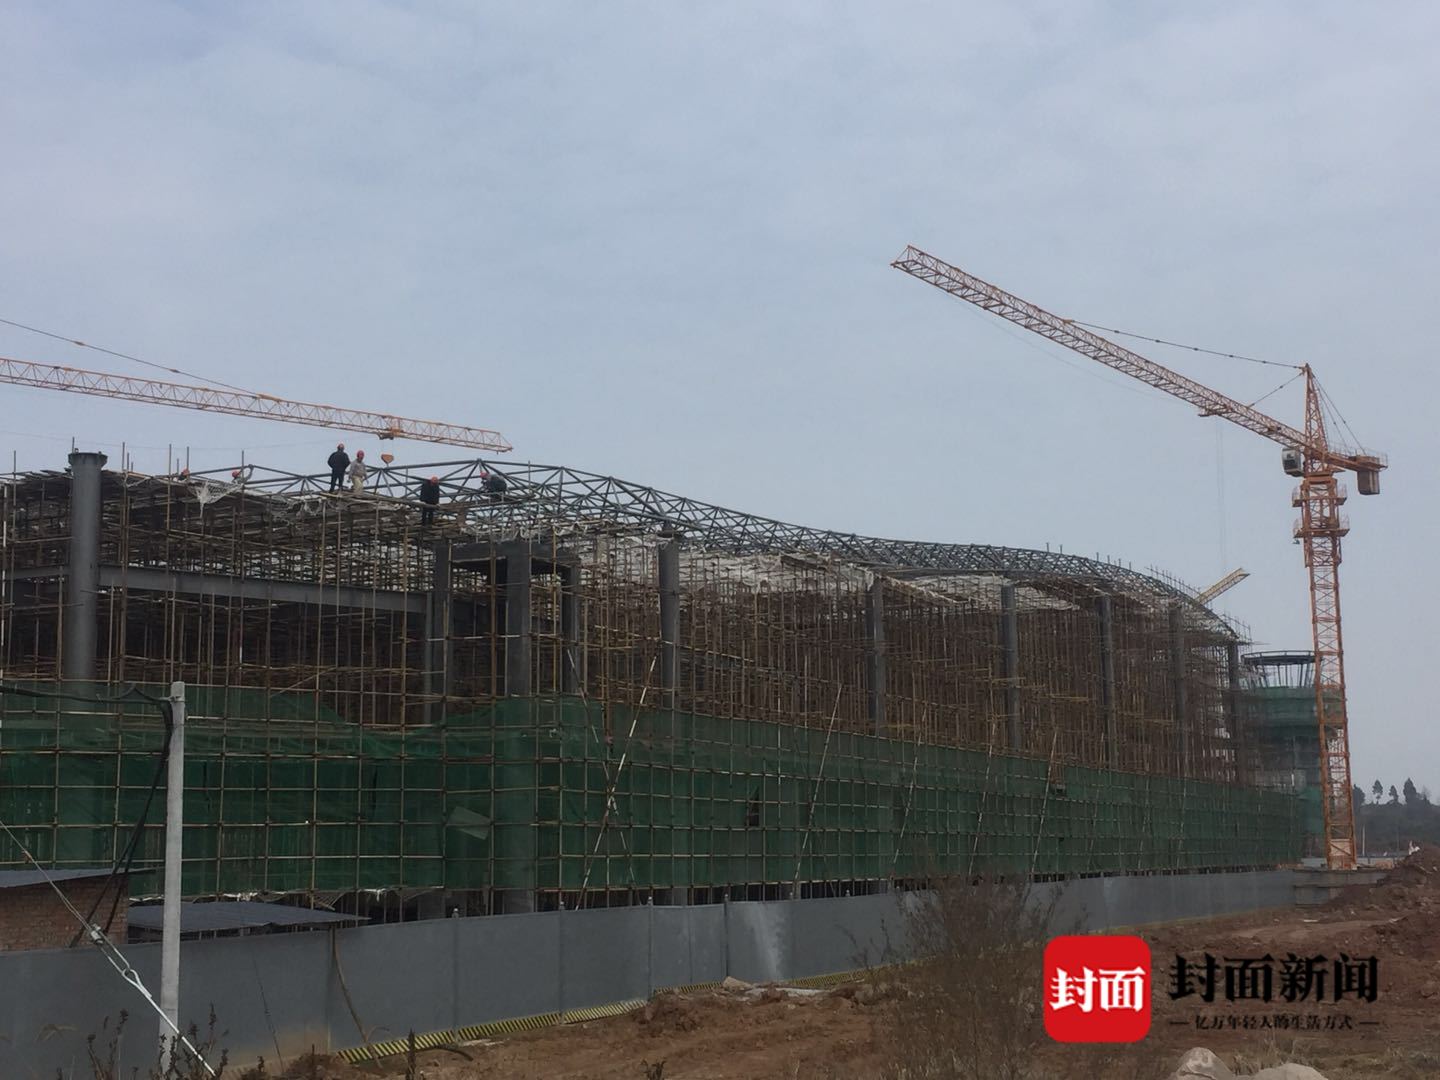 新春走基层 | 巴中恩阳机场建设者:我们今年不